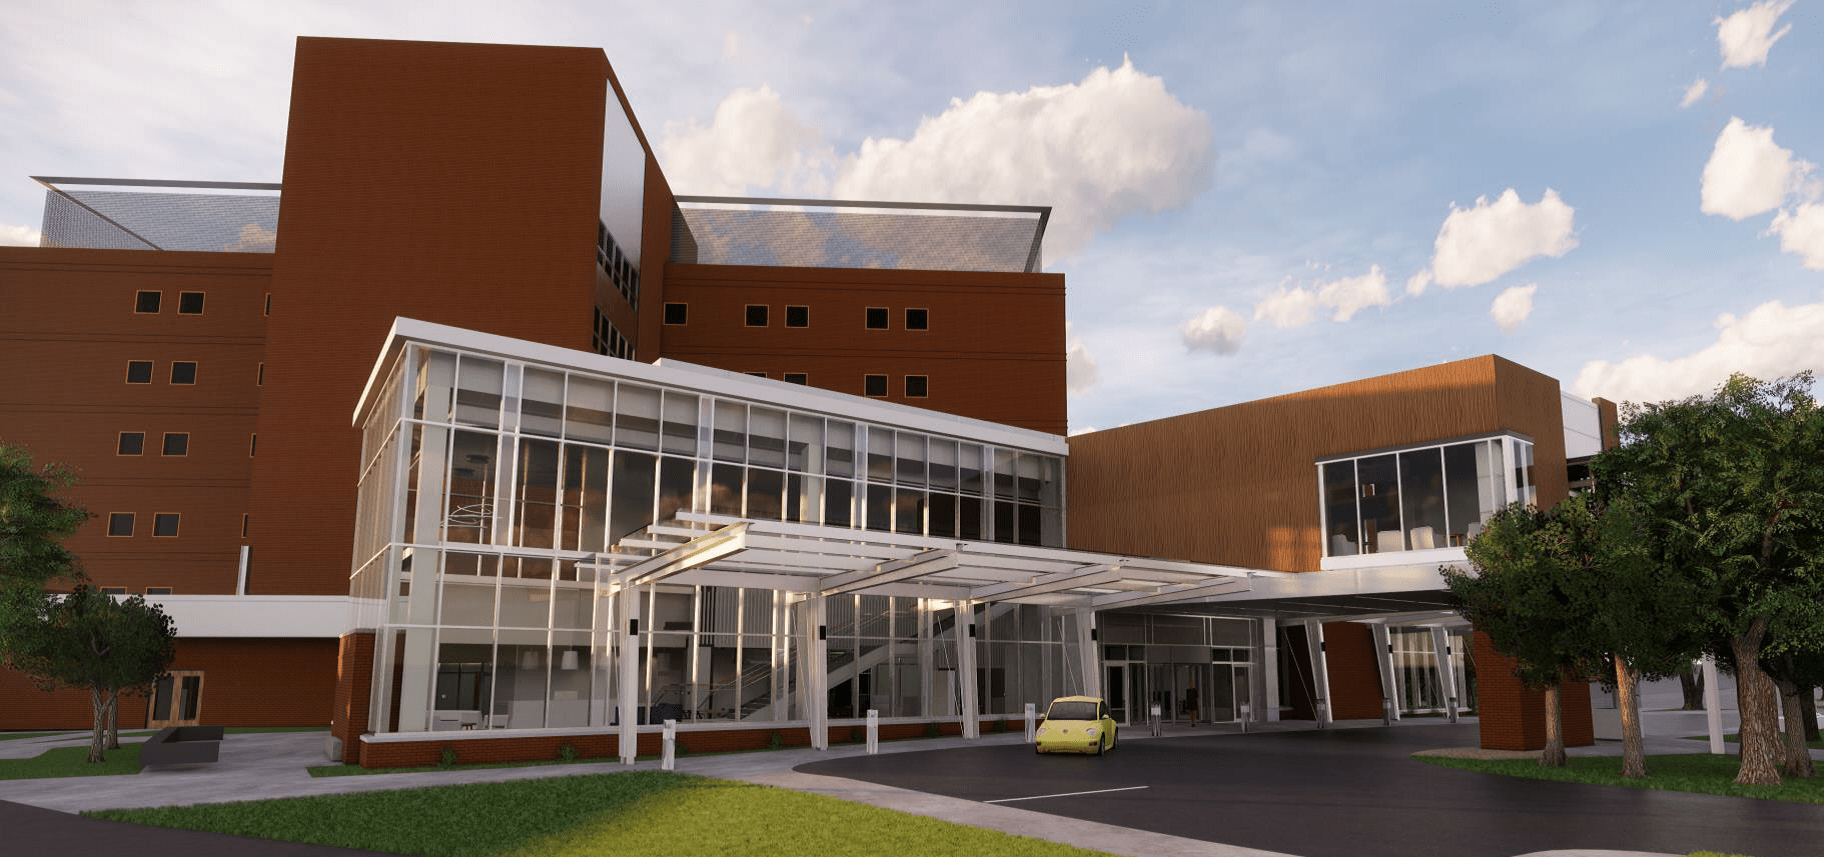 Forbes Hospital | Baskervill